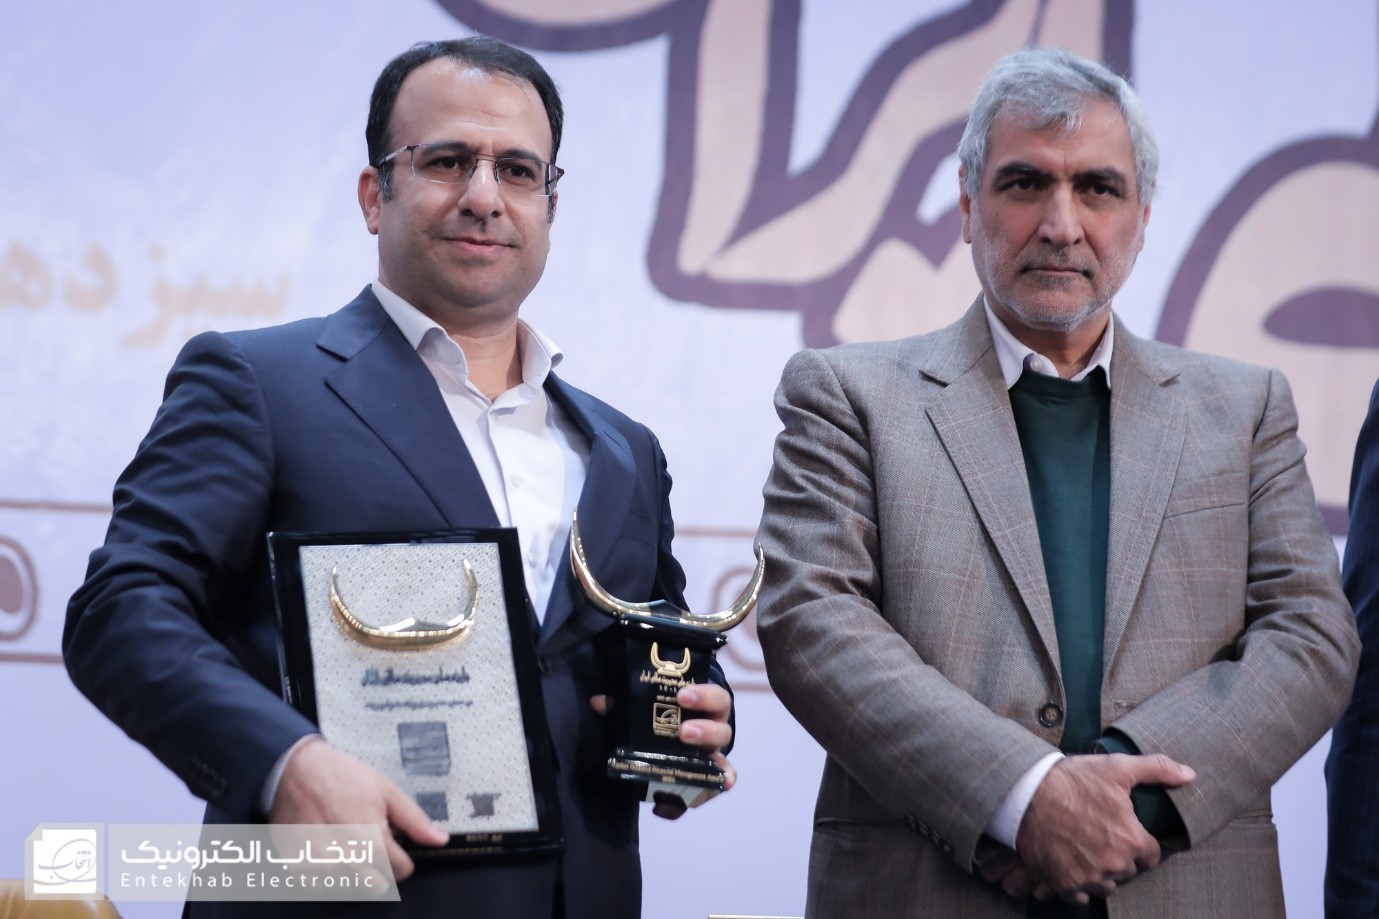 تندیس زرین جایزه ملی مدیریت مالی ایران به گروه صنعتی انتخاب الکترونیک تعلق گرفت